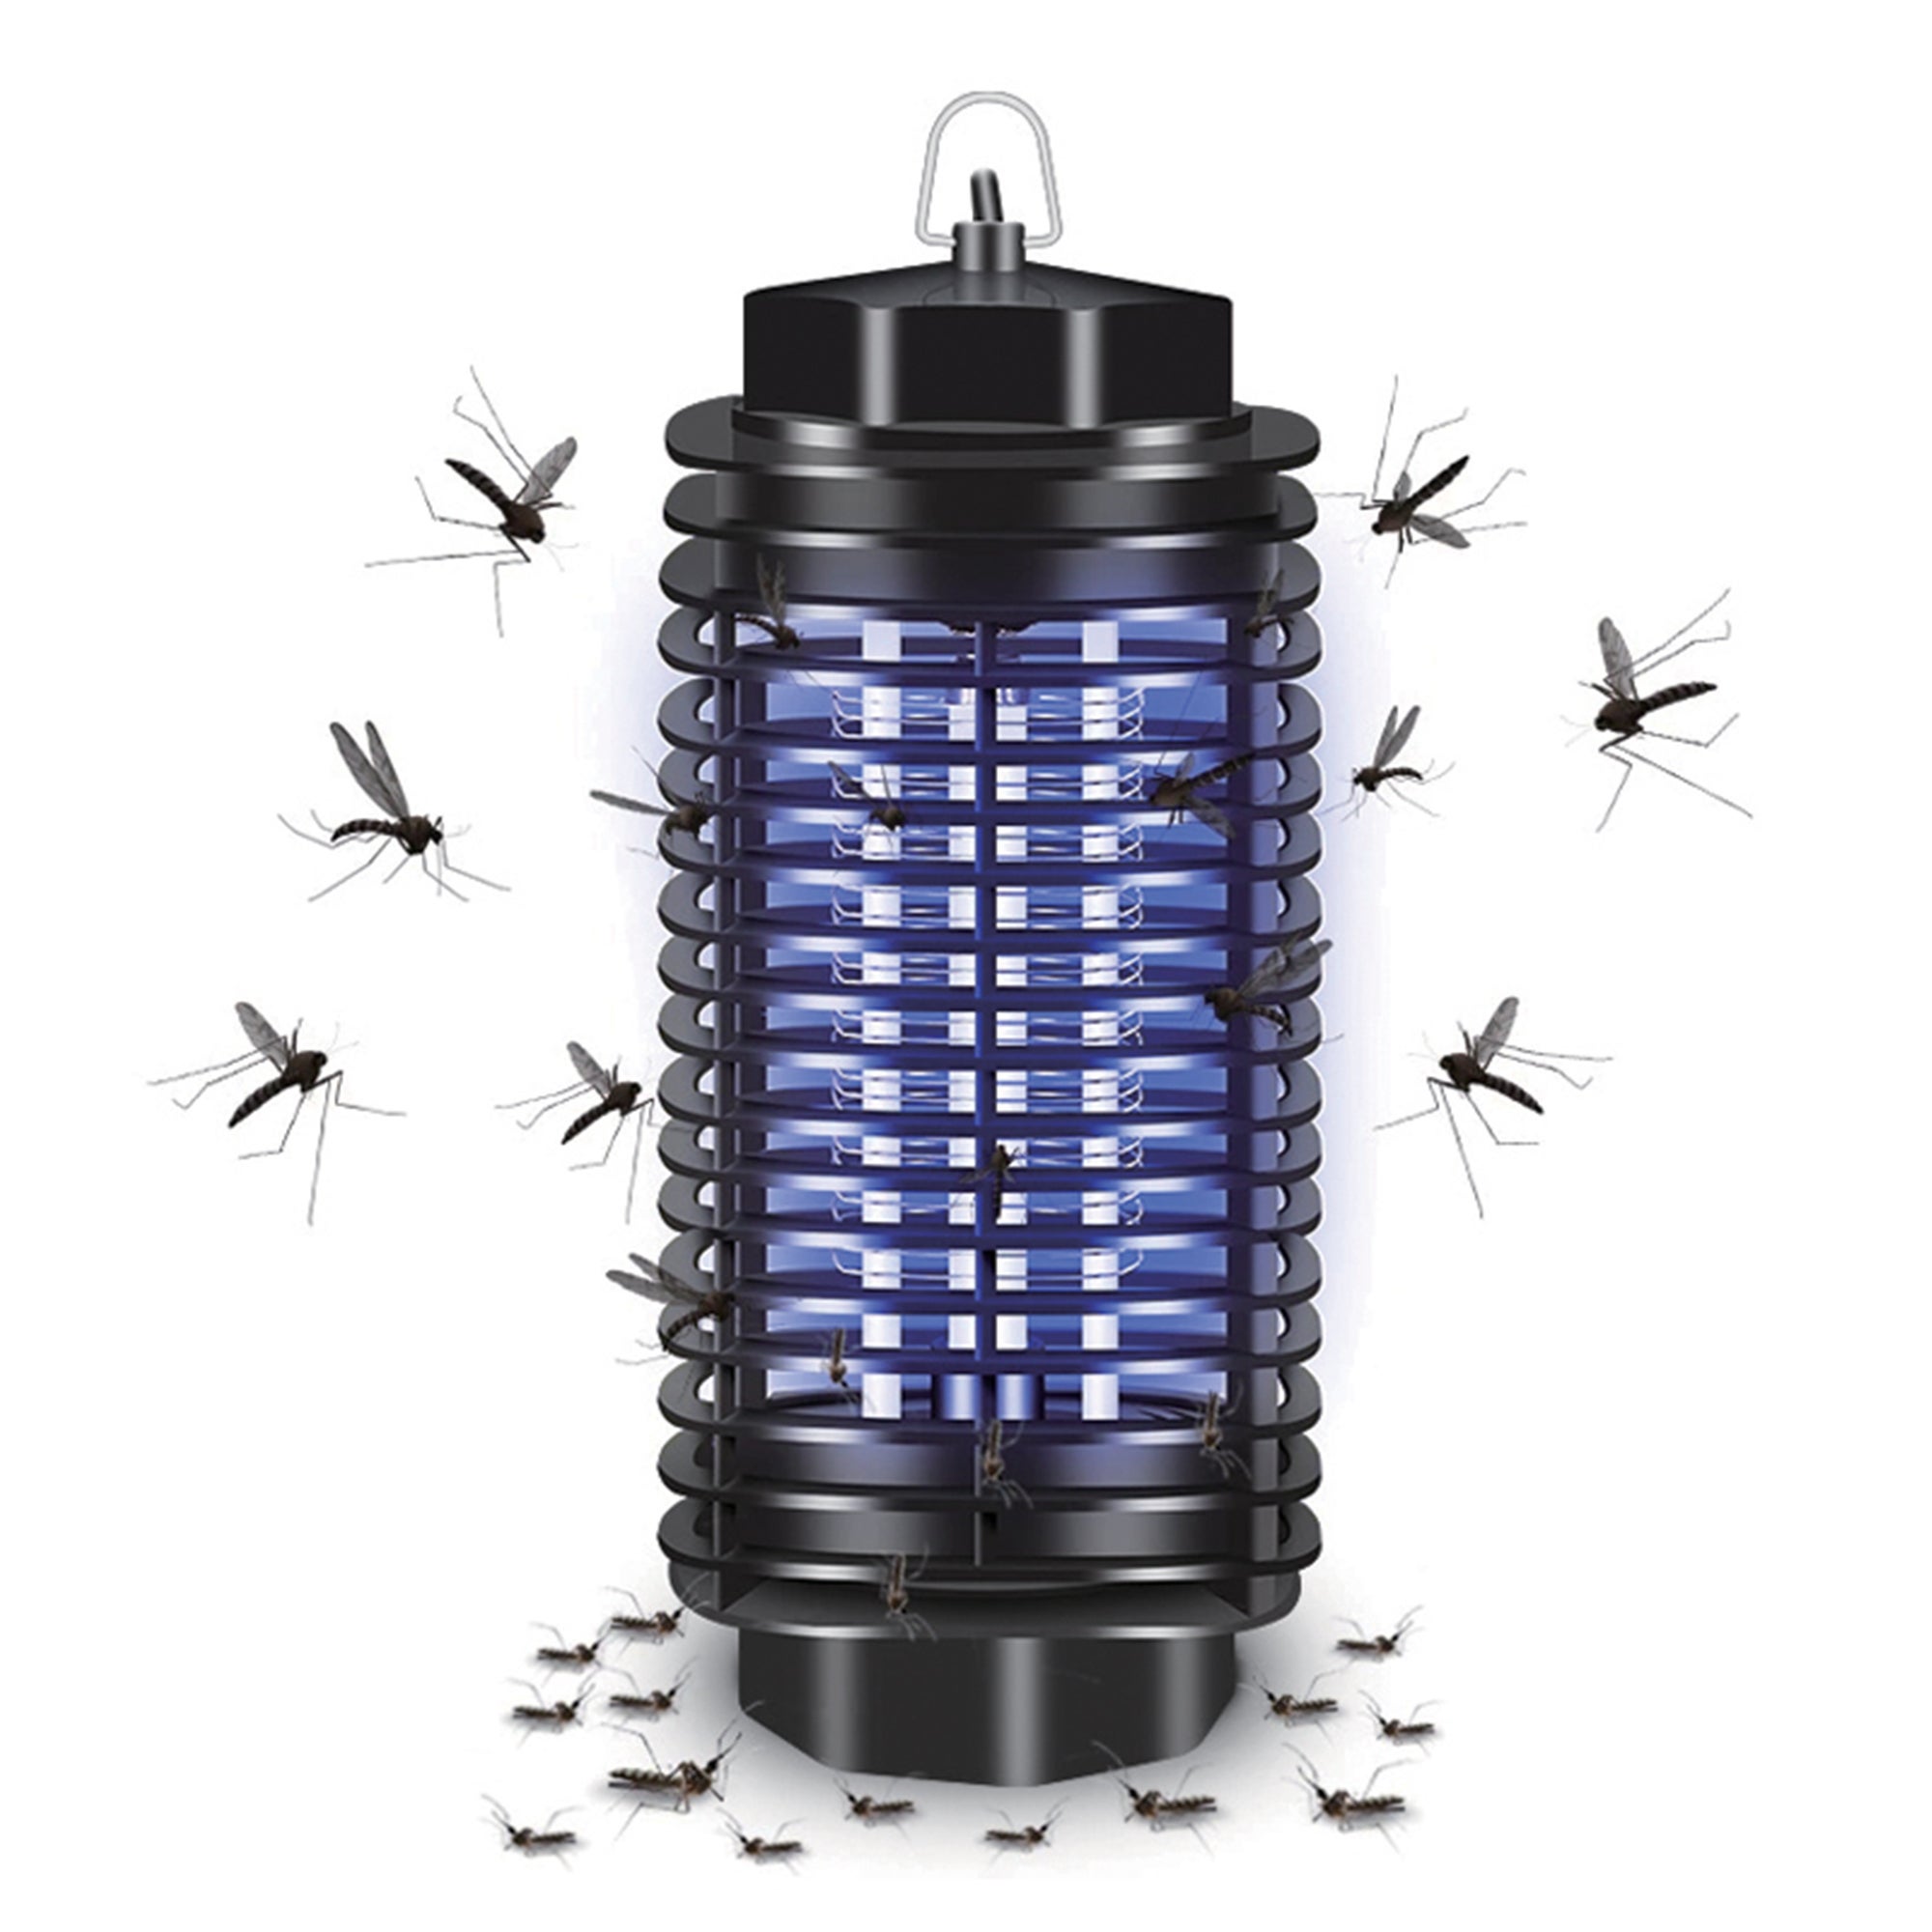 Anti moustique SHOP-STORY Ventilateur anti mouches